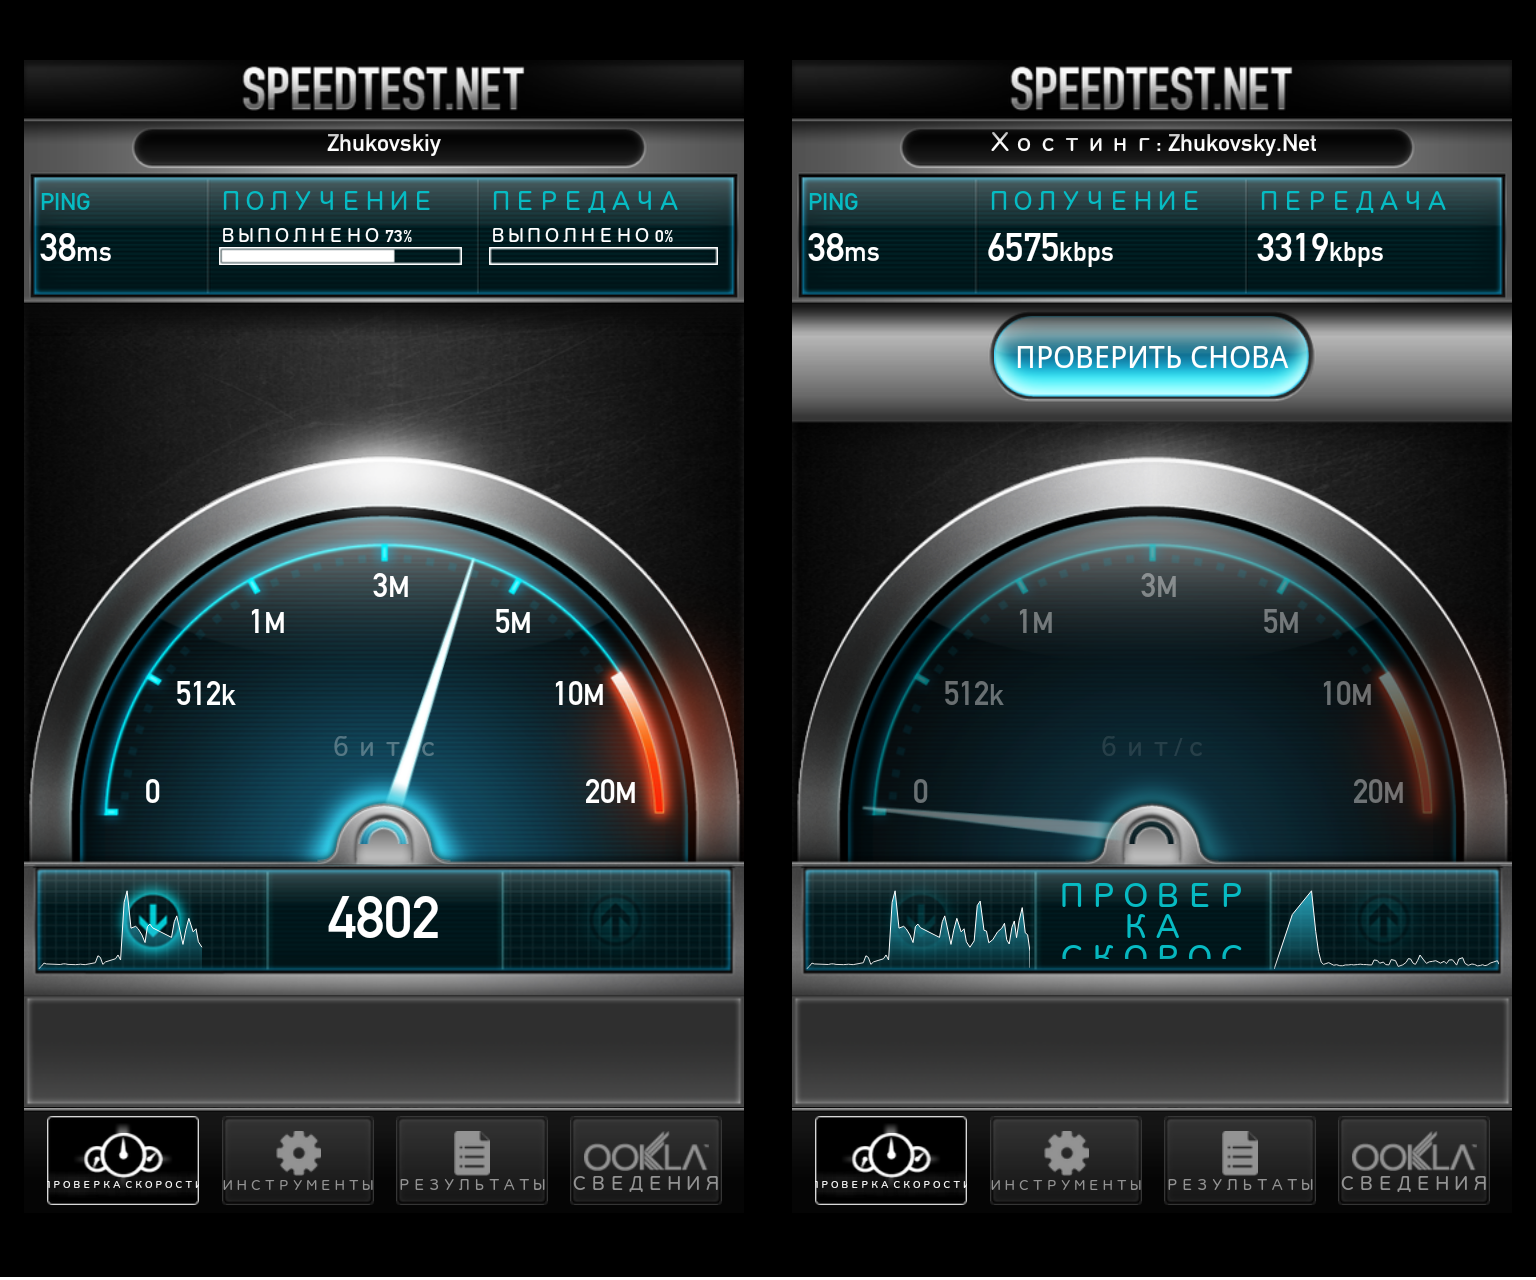 Тест скорости 6. Speedtest скорость. Скрин скорости интернета. Тест скорости интернета.